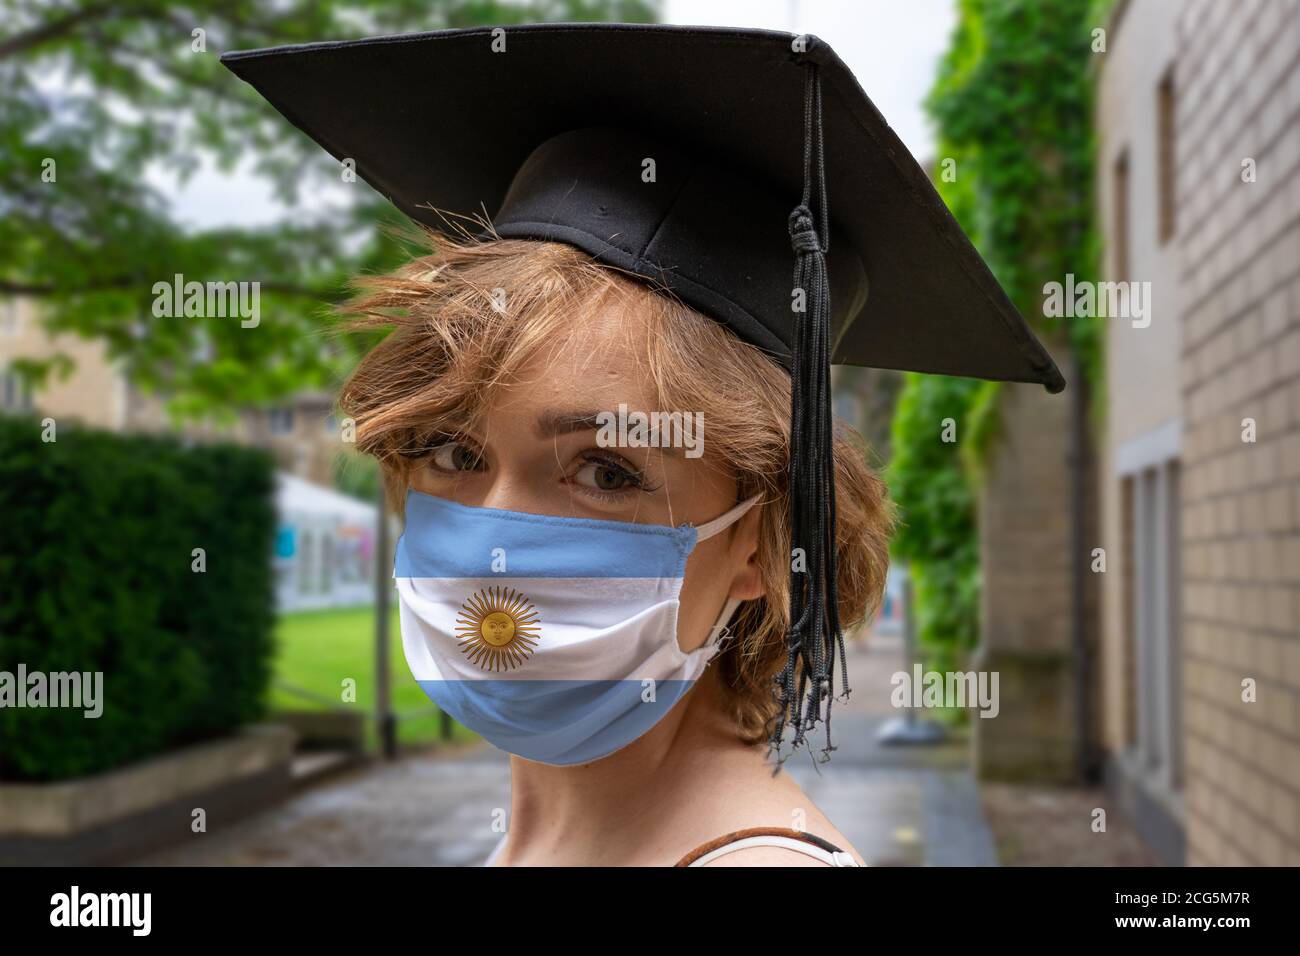 Estudiante Graduación con diseño argentino protector coronavirus máscara facial en La ceremonia de Graduación en la Universidad Foto de stock